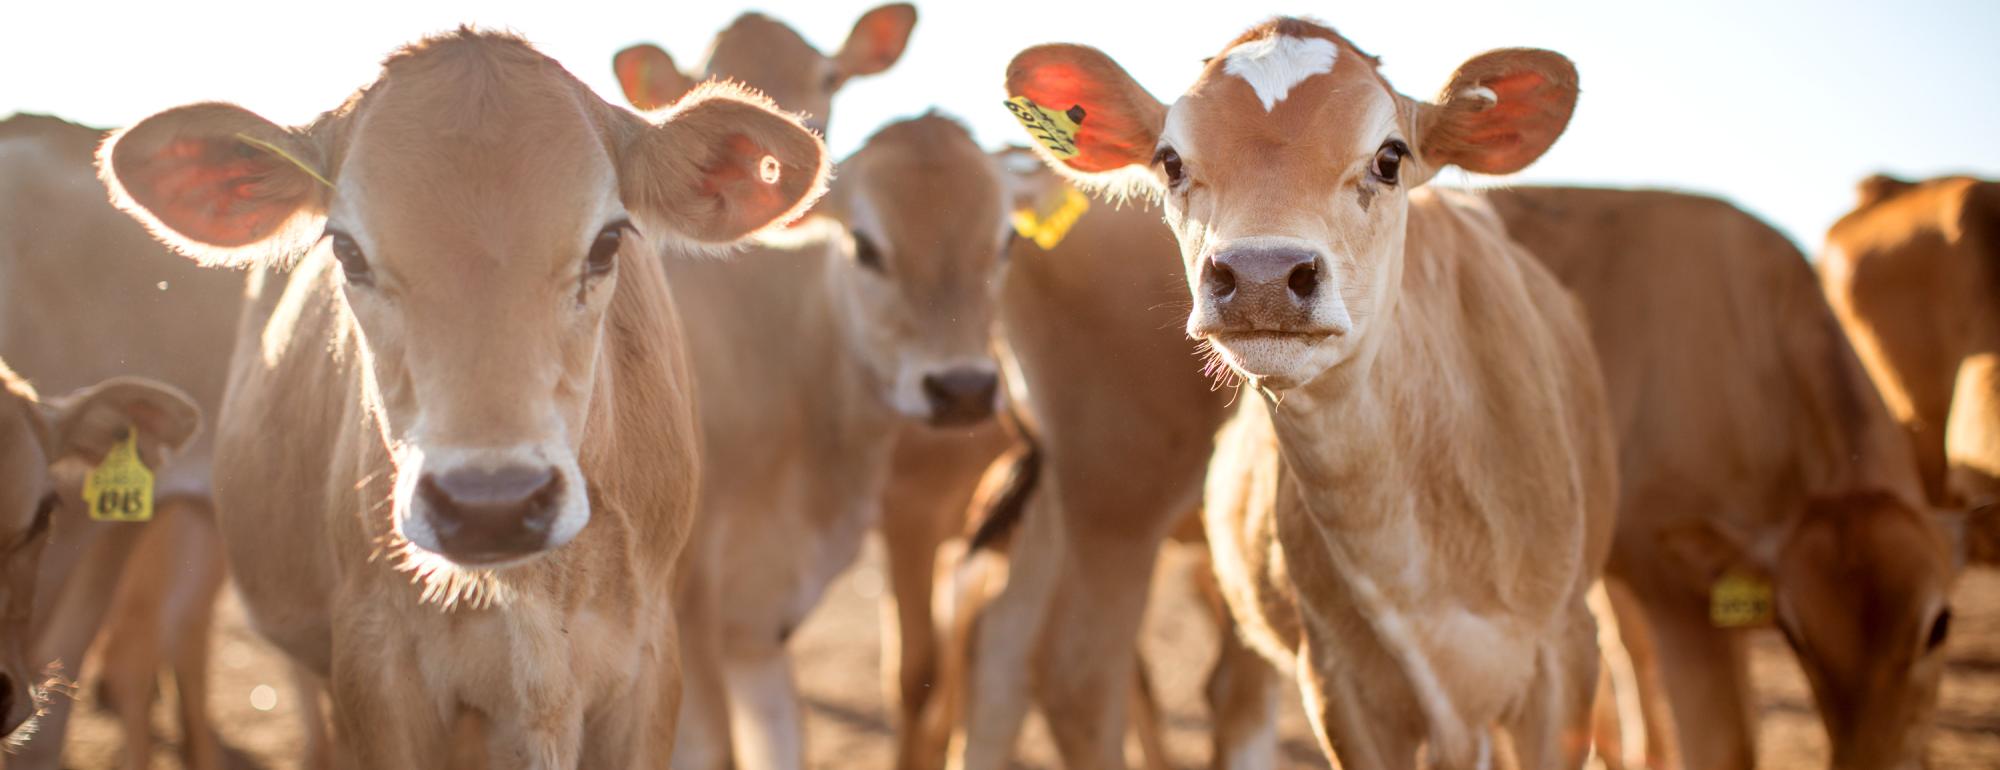 Dairy cows on a california farm